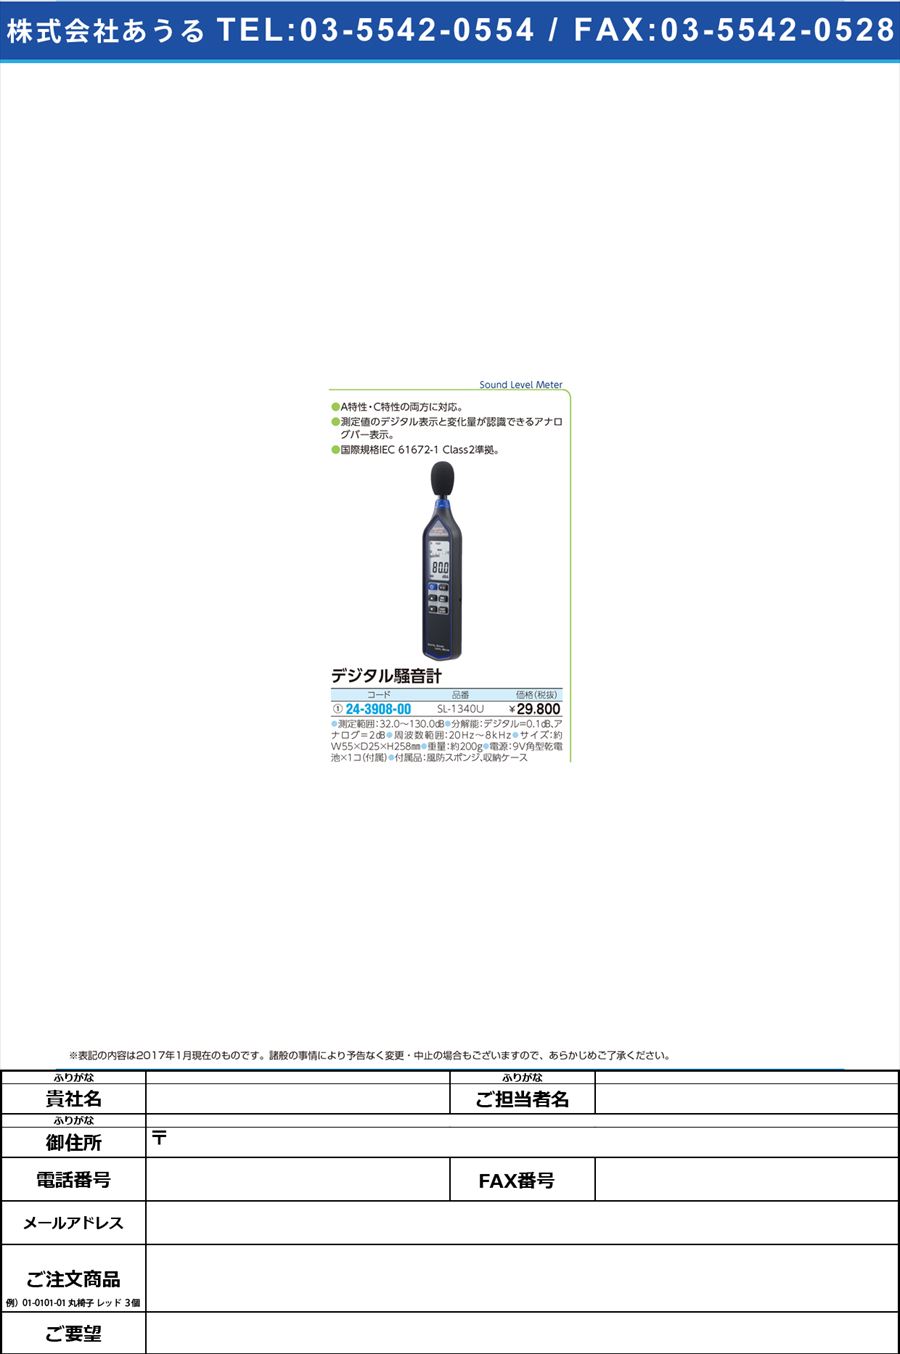 (24-3908-00)デジタル騒音計 ﾃﾞｼﾞﾀﾙｿｳｵﾝｹｲ SL-1340U(24-3908-00)【1台単位】【2017年カタログ商品】